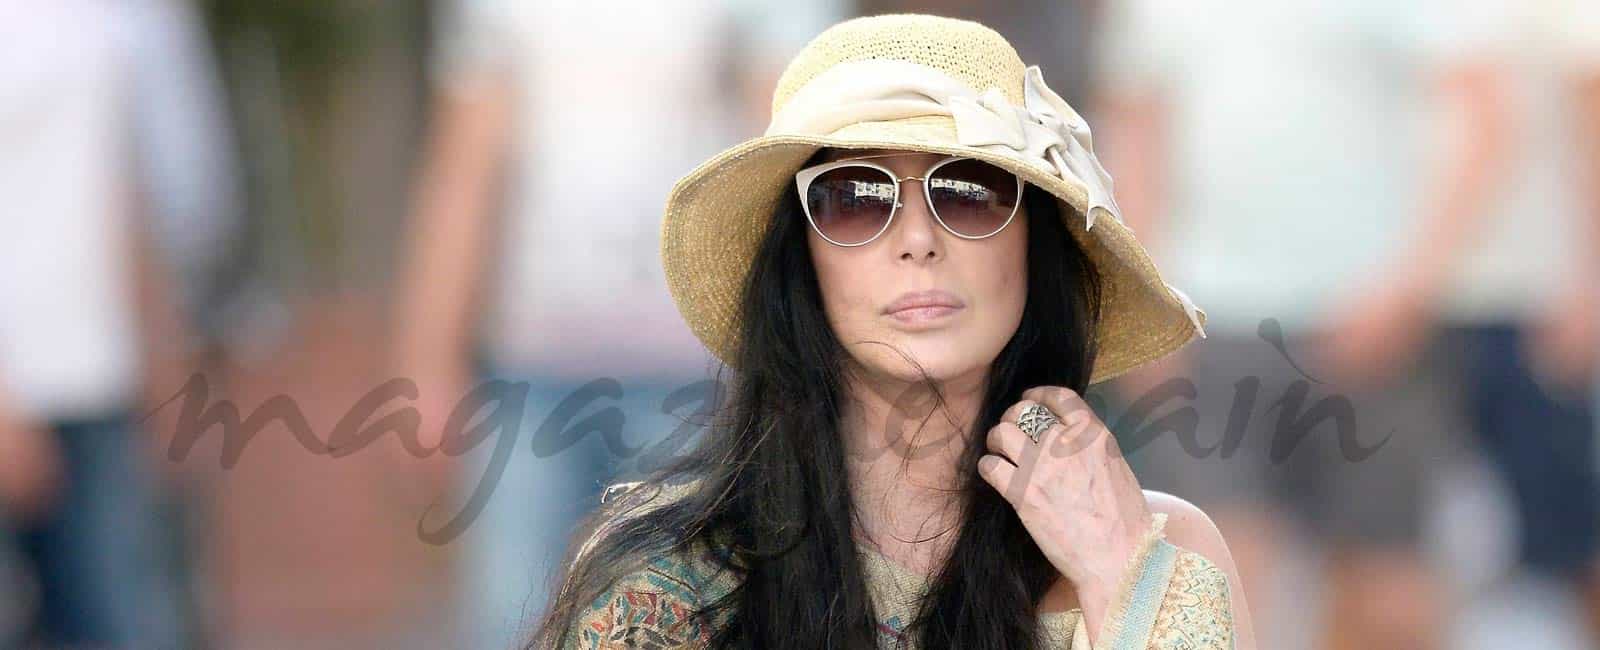 Cher, cumplidos los 70 años, vuelve a cantar en Las Vegas